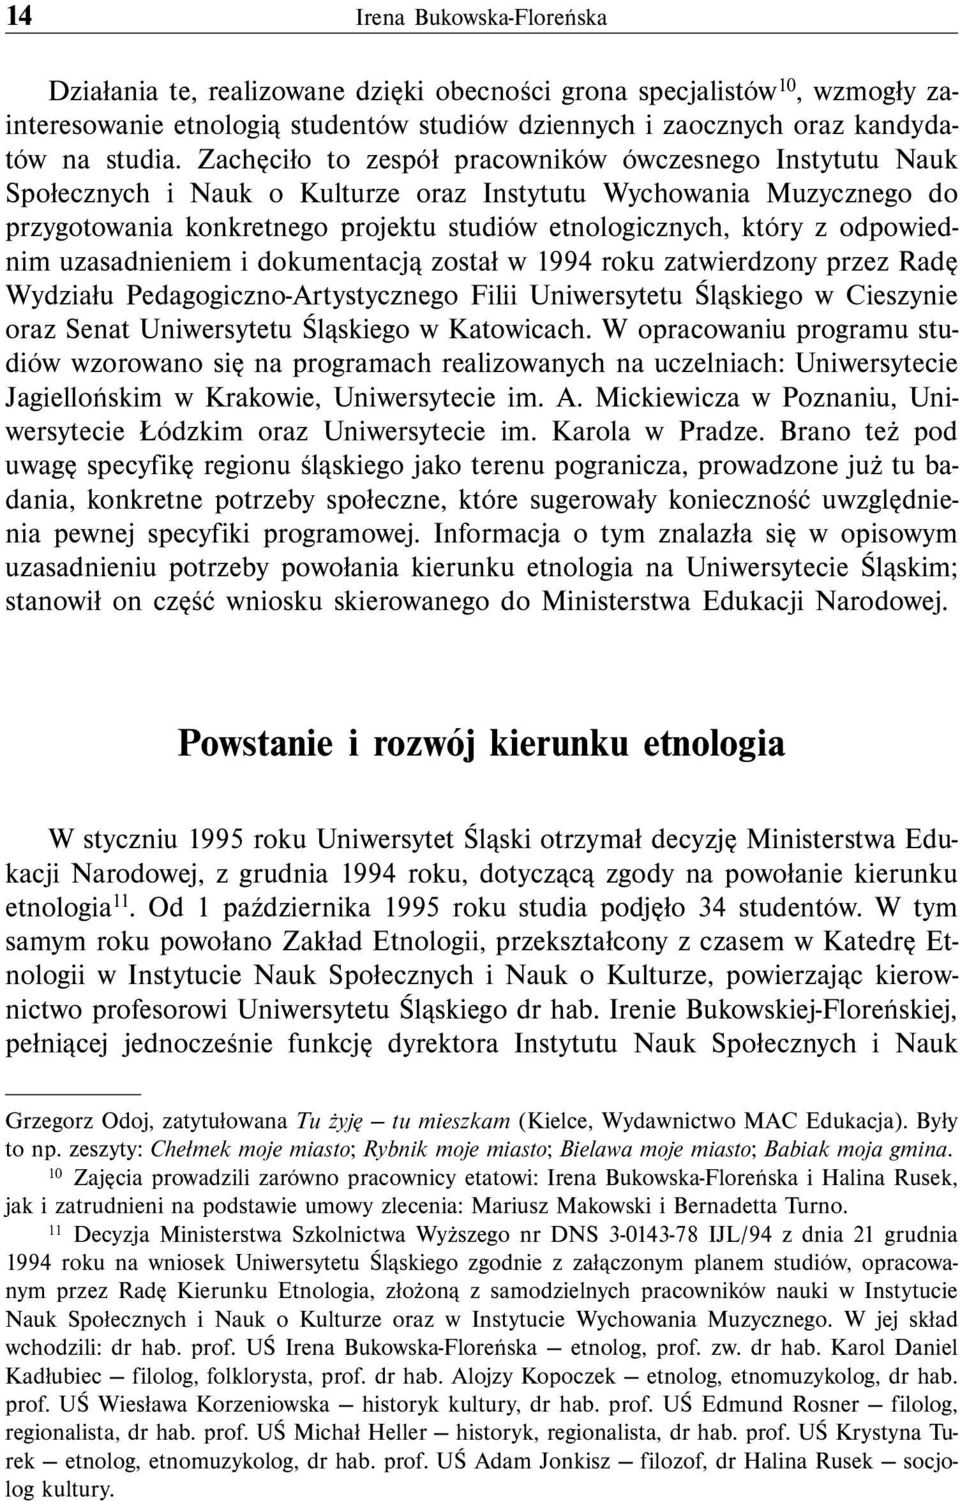 odpowiednim uzasadnieniem i dokumentacją został w 1994 roku zatwierdzony przez Radę Wydziału Pedagogiczno-Artystycznego Filii Uniwersytetu Śląskiego w Cieszynie oraz Senat Uniwersytetu Śląskiego w